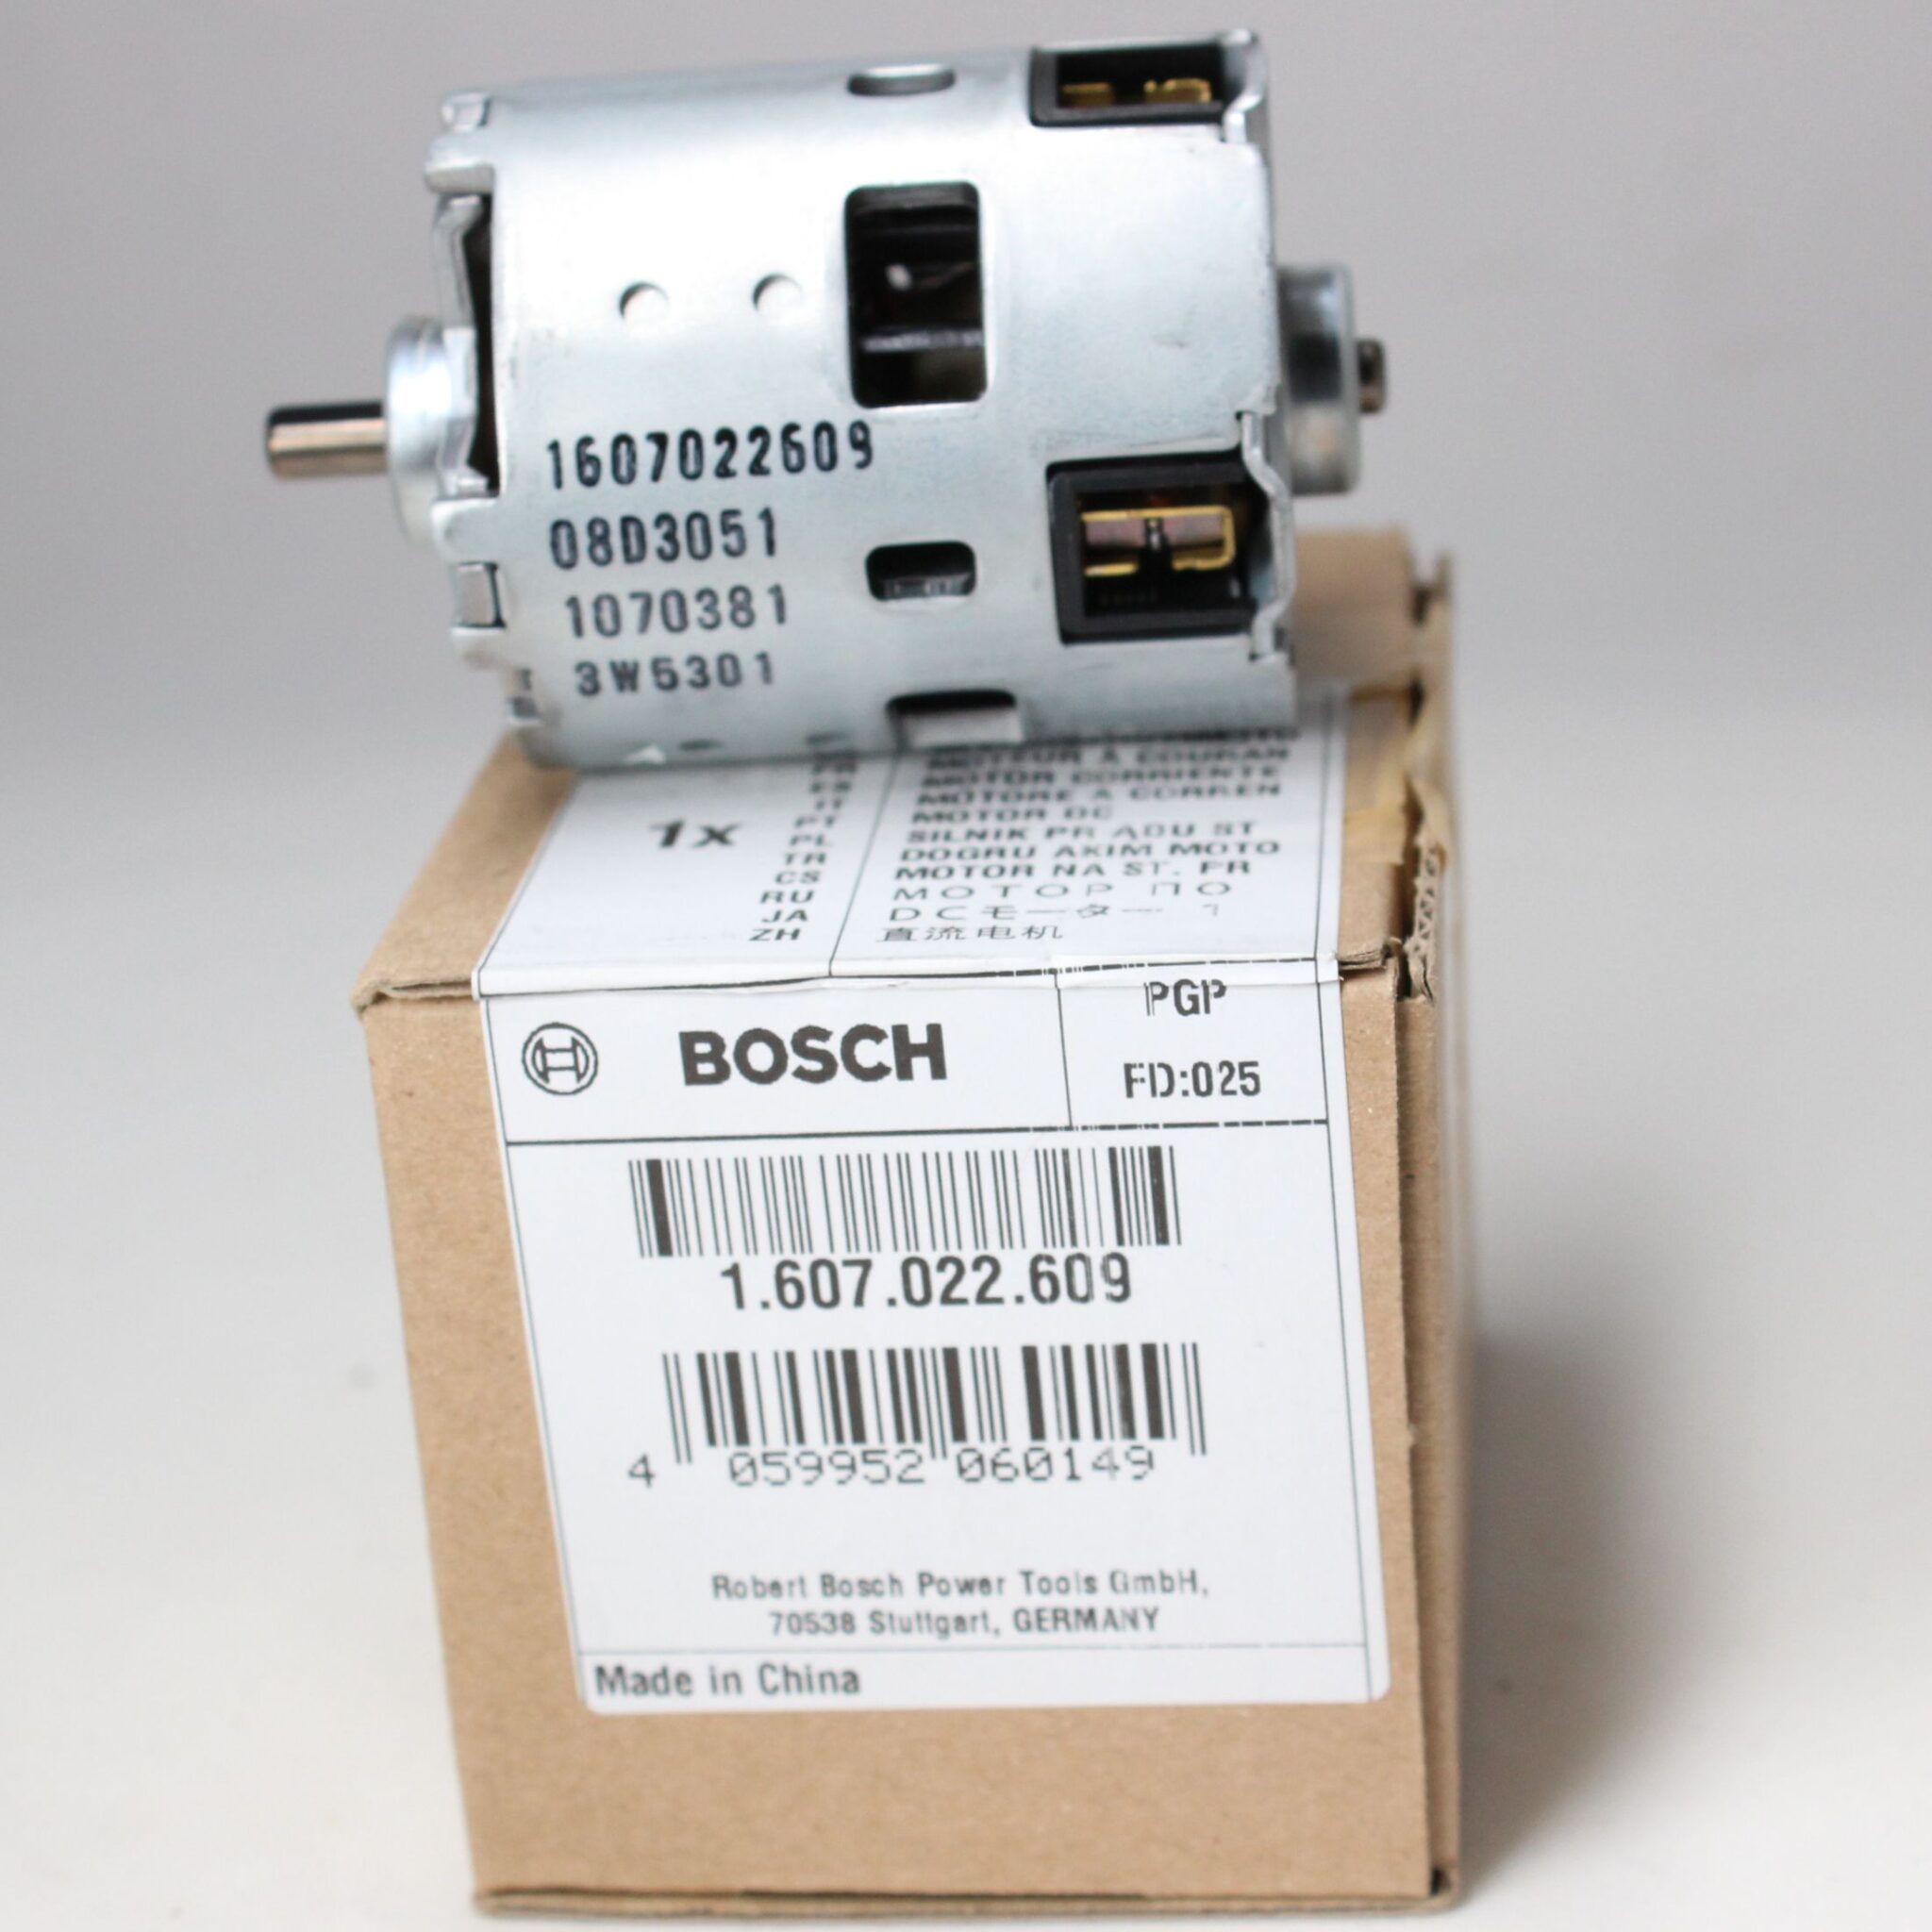 картинка Двигатель для шуруповерта GSR/GSB 18 VE-2-LI Bosch 1607022609 (1 607 022 609) от интернет-магазина РемЗапчасти24